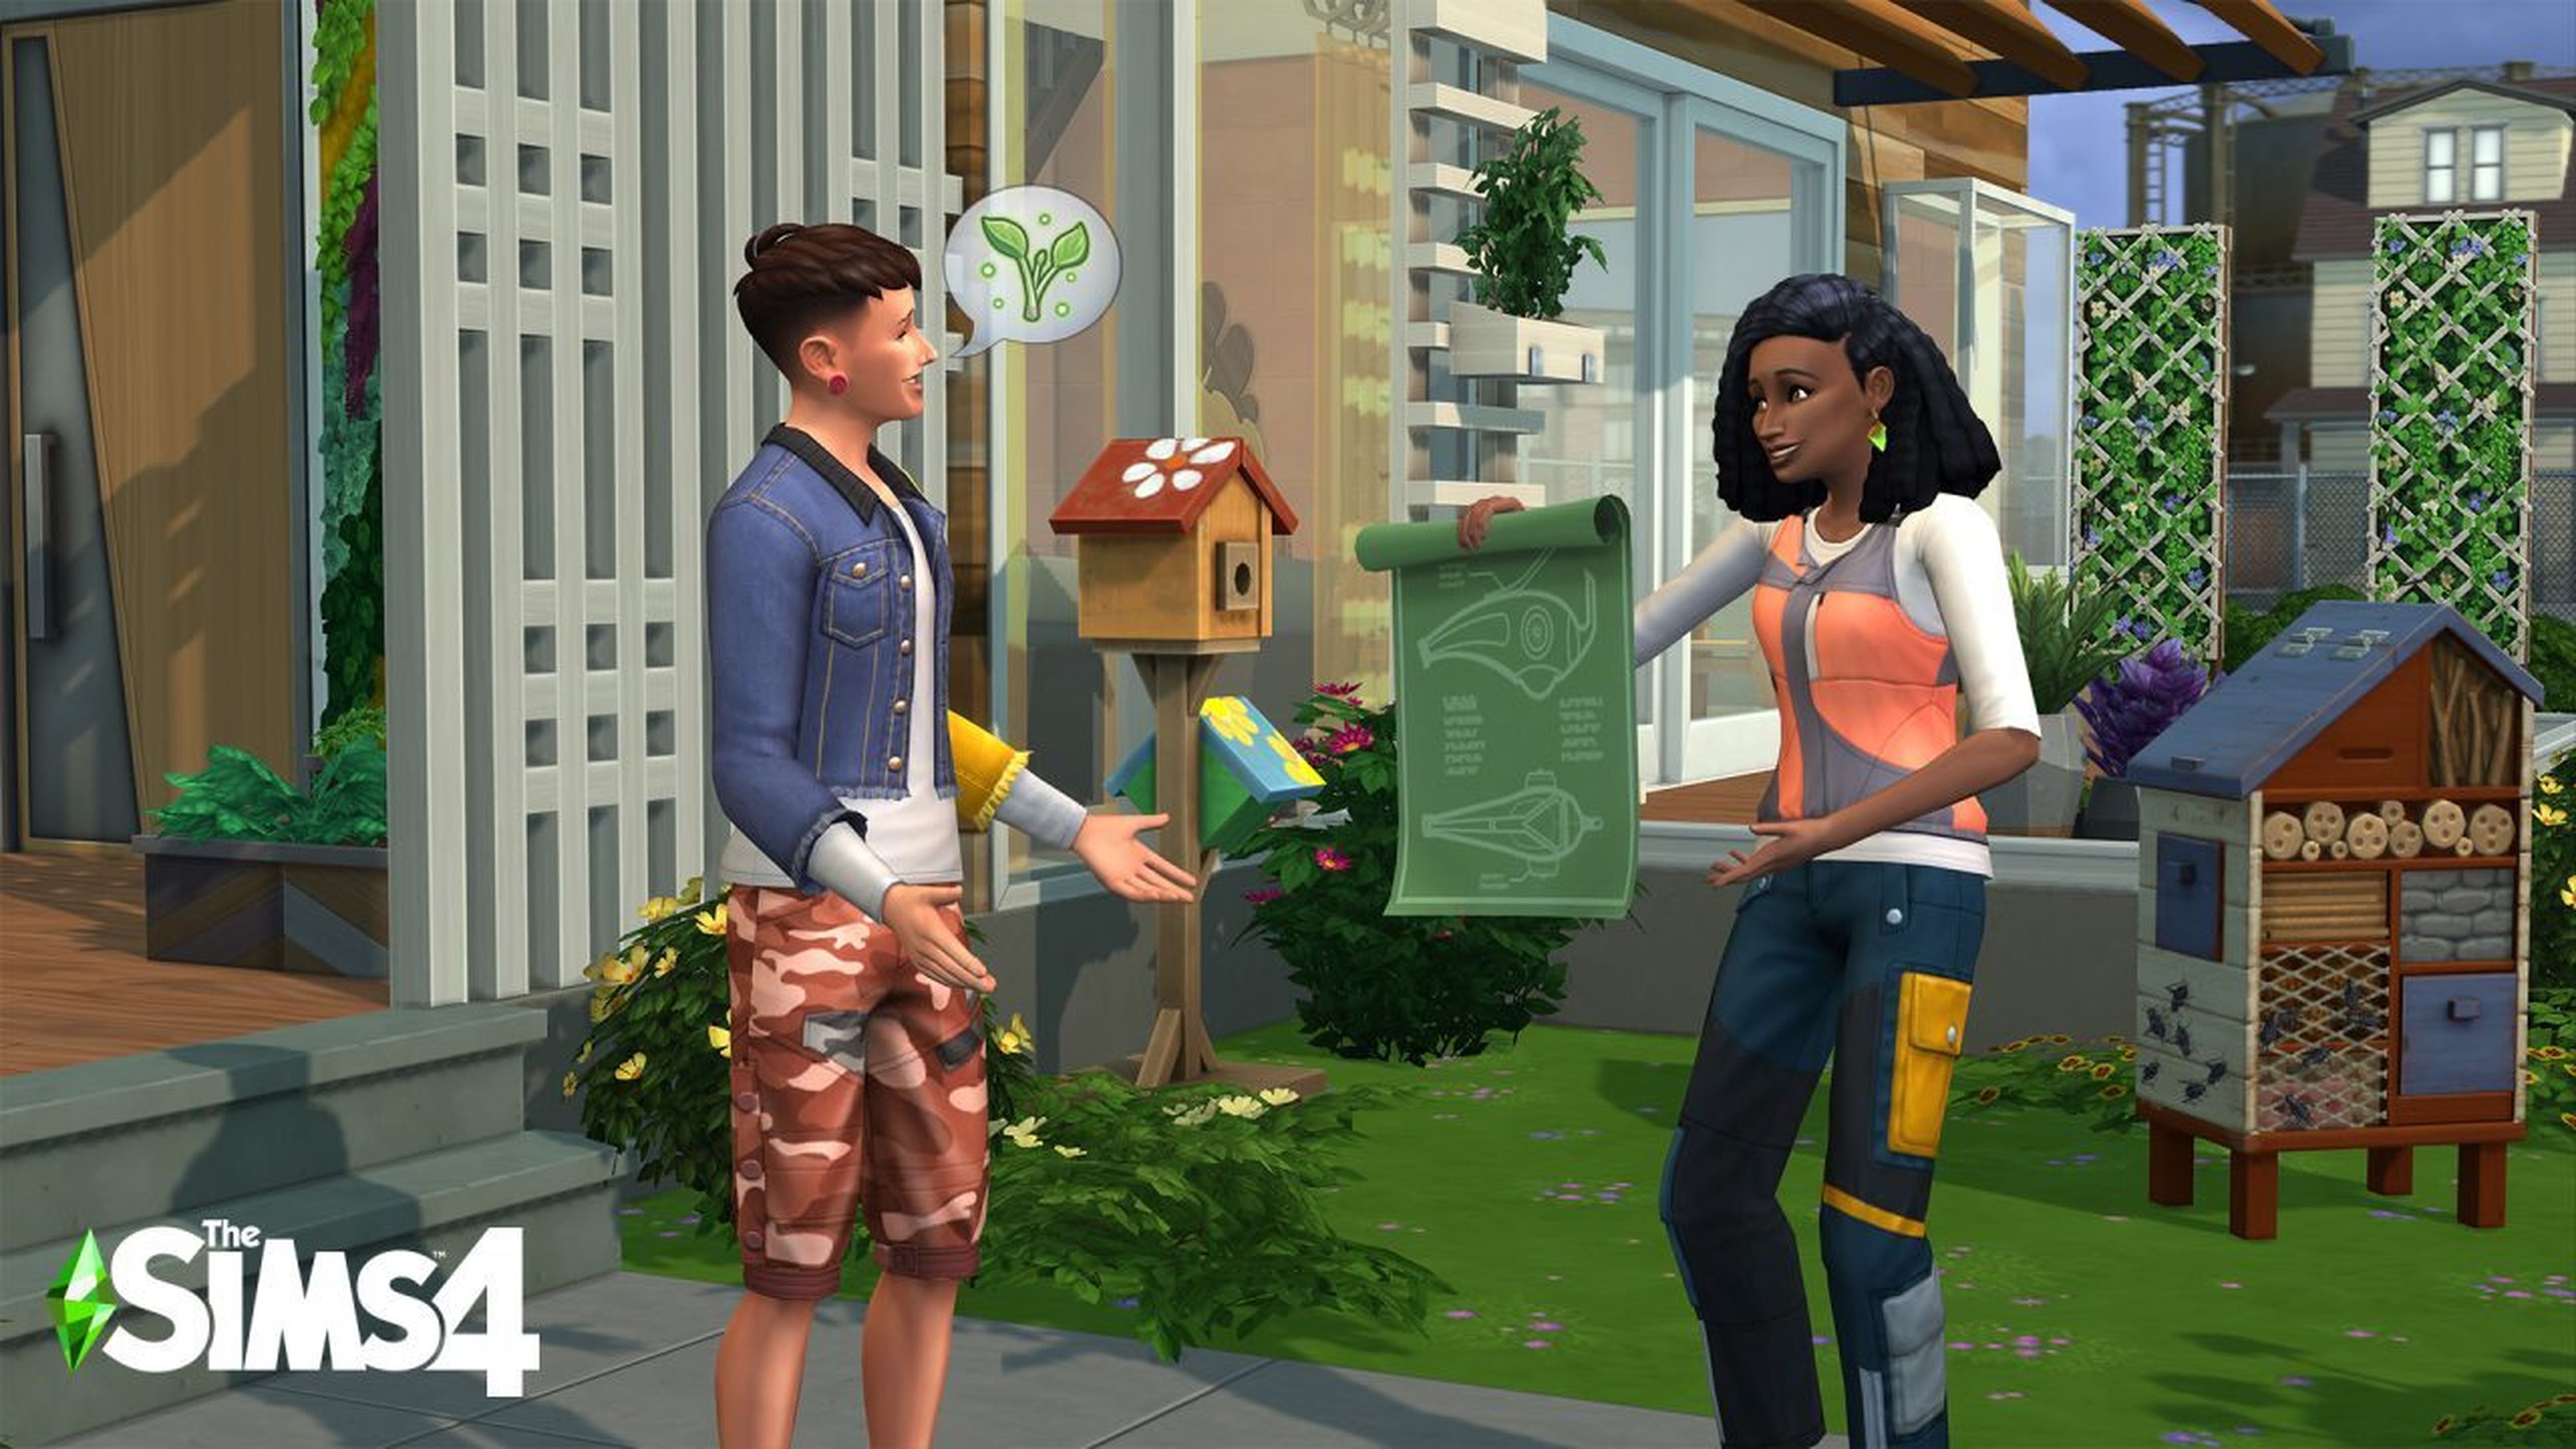 Los Sims 4 Vida Ecológica